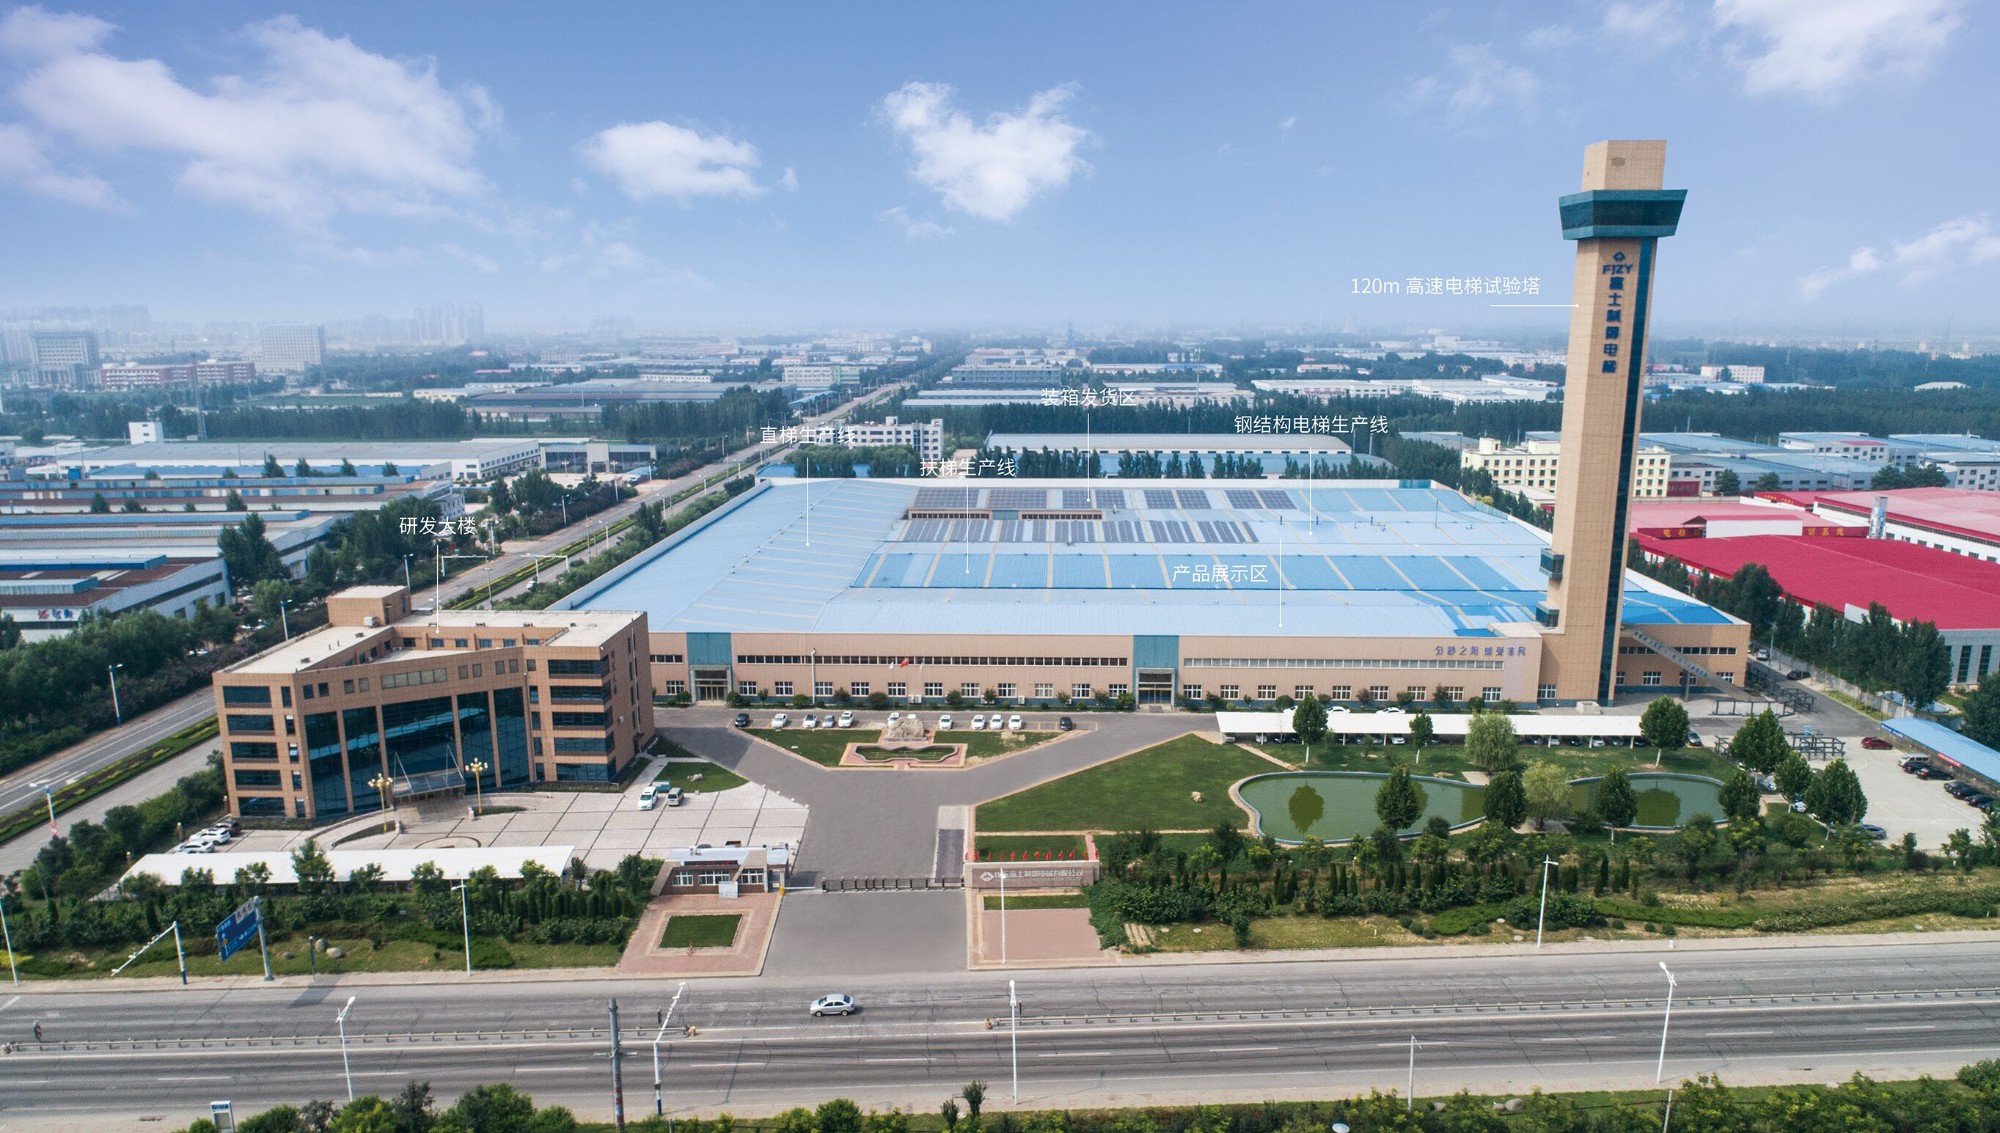 El proyecto de escaleras mecánicas FUJIZY de Shandong se vende bien en el mercado internacional